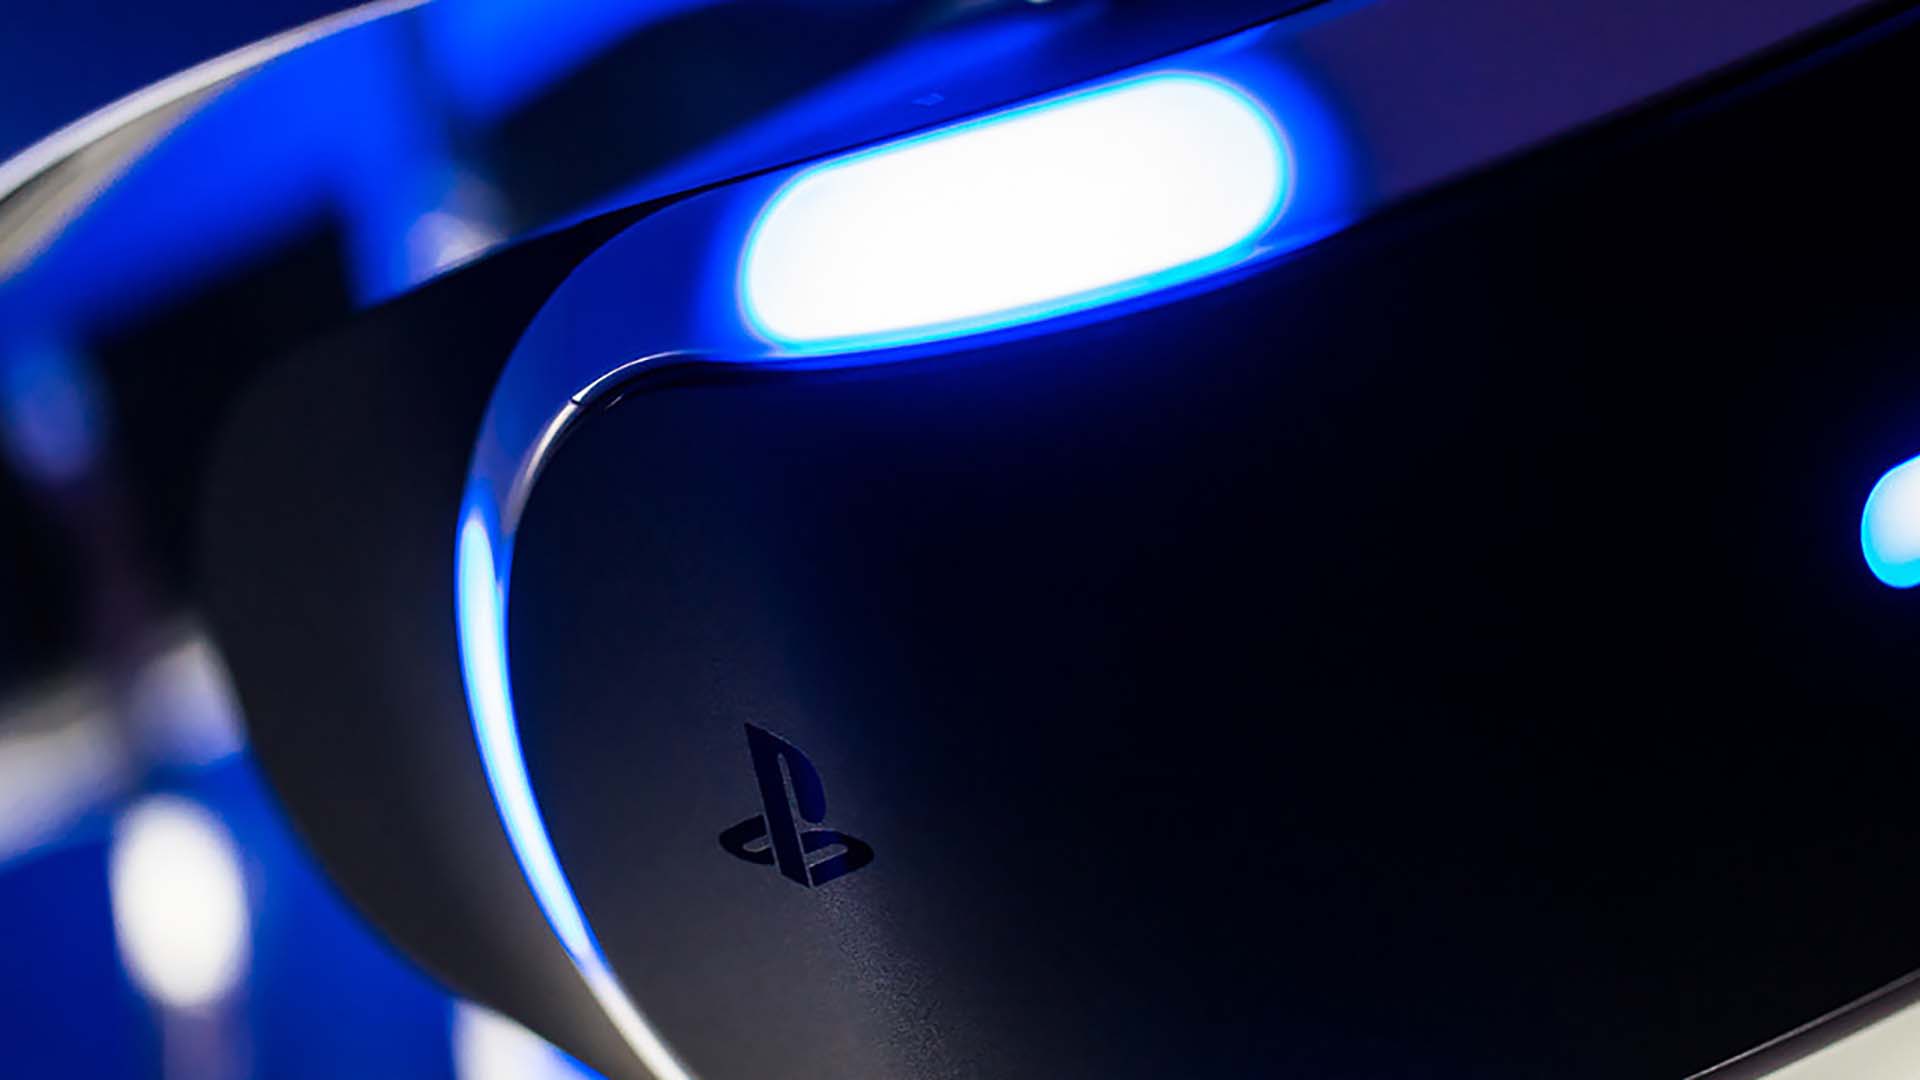 PS5 : Sony ne lancerait pas de nouveau casque PSVR en 2020